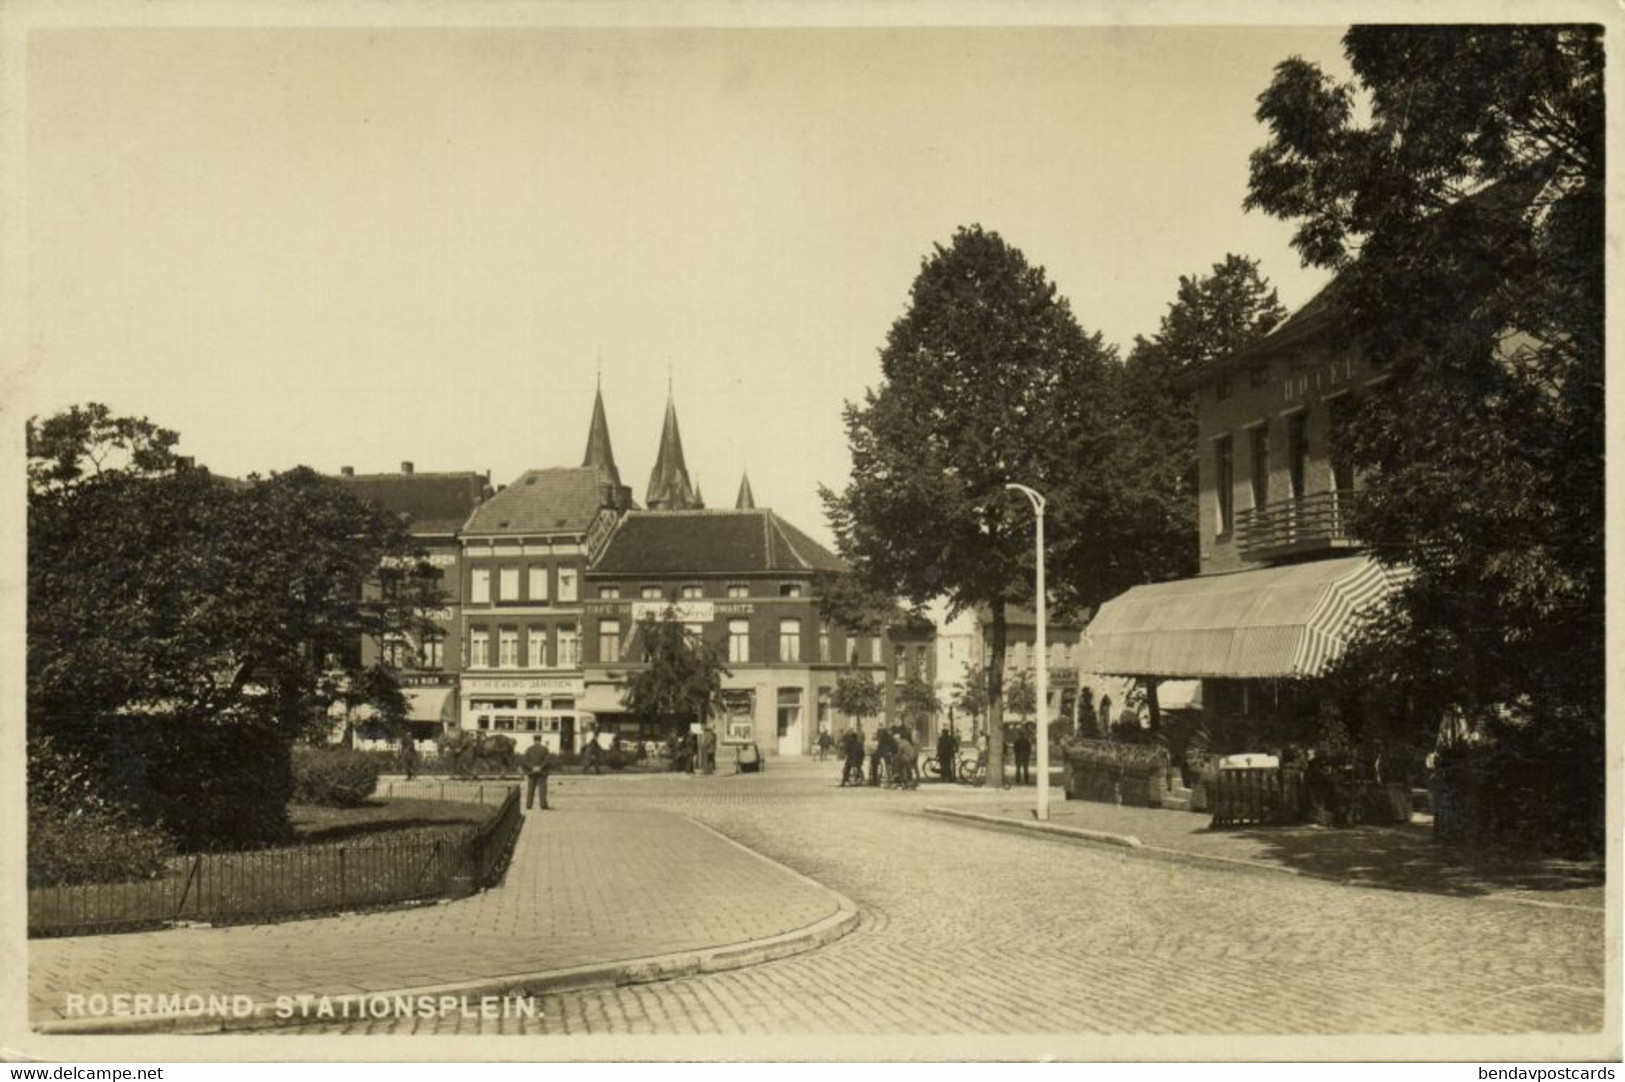 Nederland, ROERMOND, Stationsplein (1930s) Ansichtkaart - Roermond